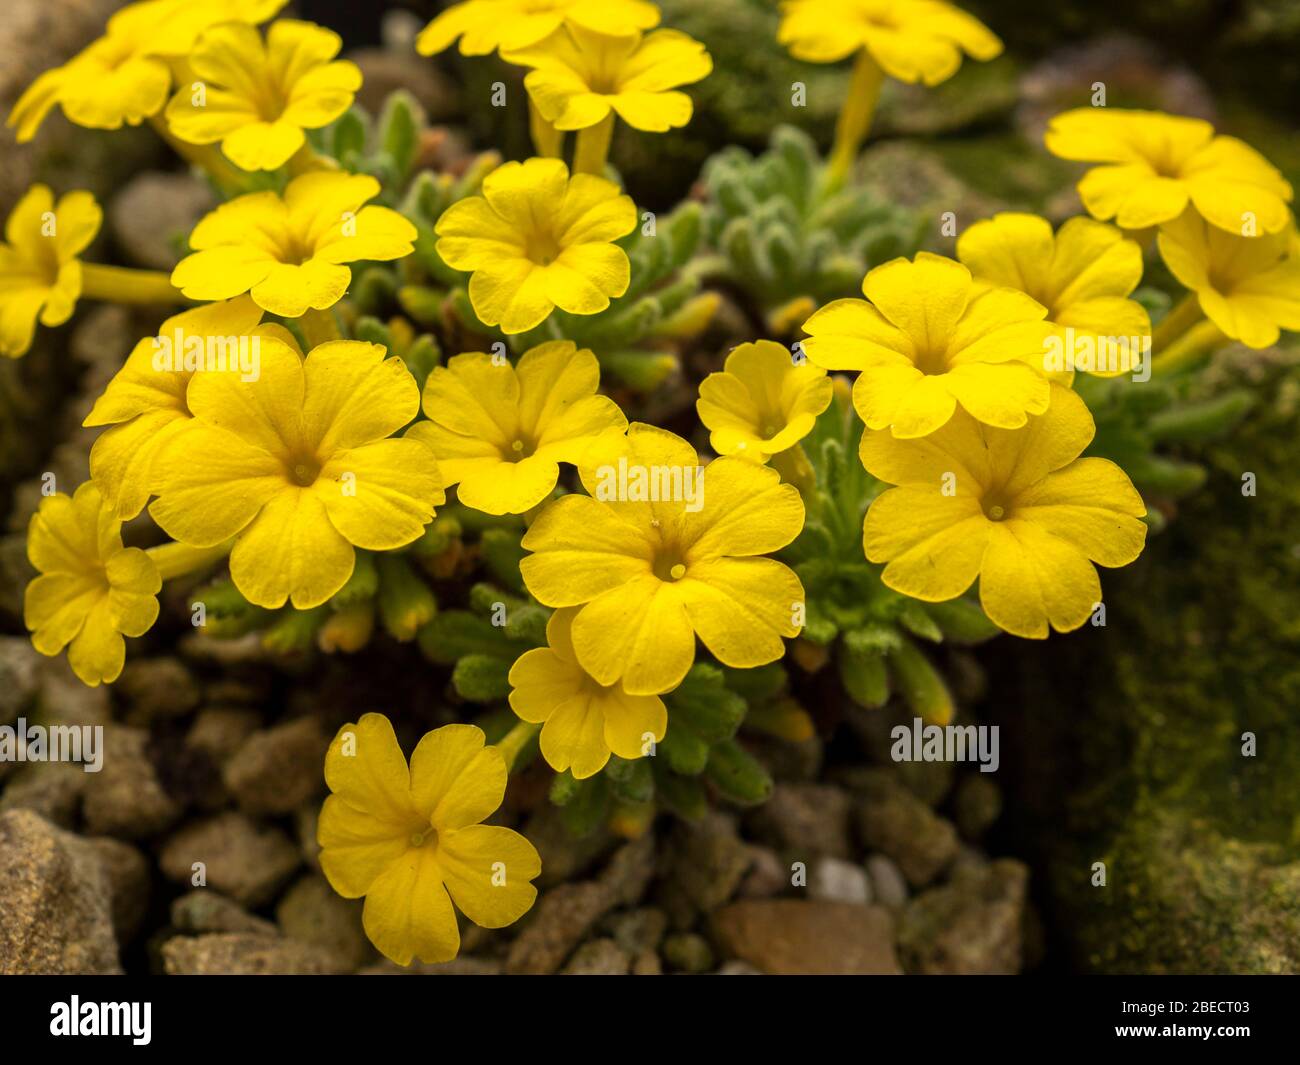 Fleurs jaunes vives d'une plante alpine, Dionysia arétioides, dans un jardin en rockery Banque D'Images